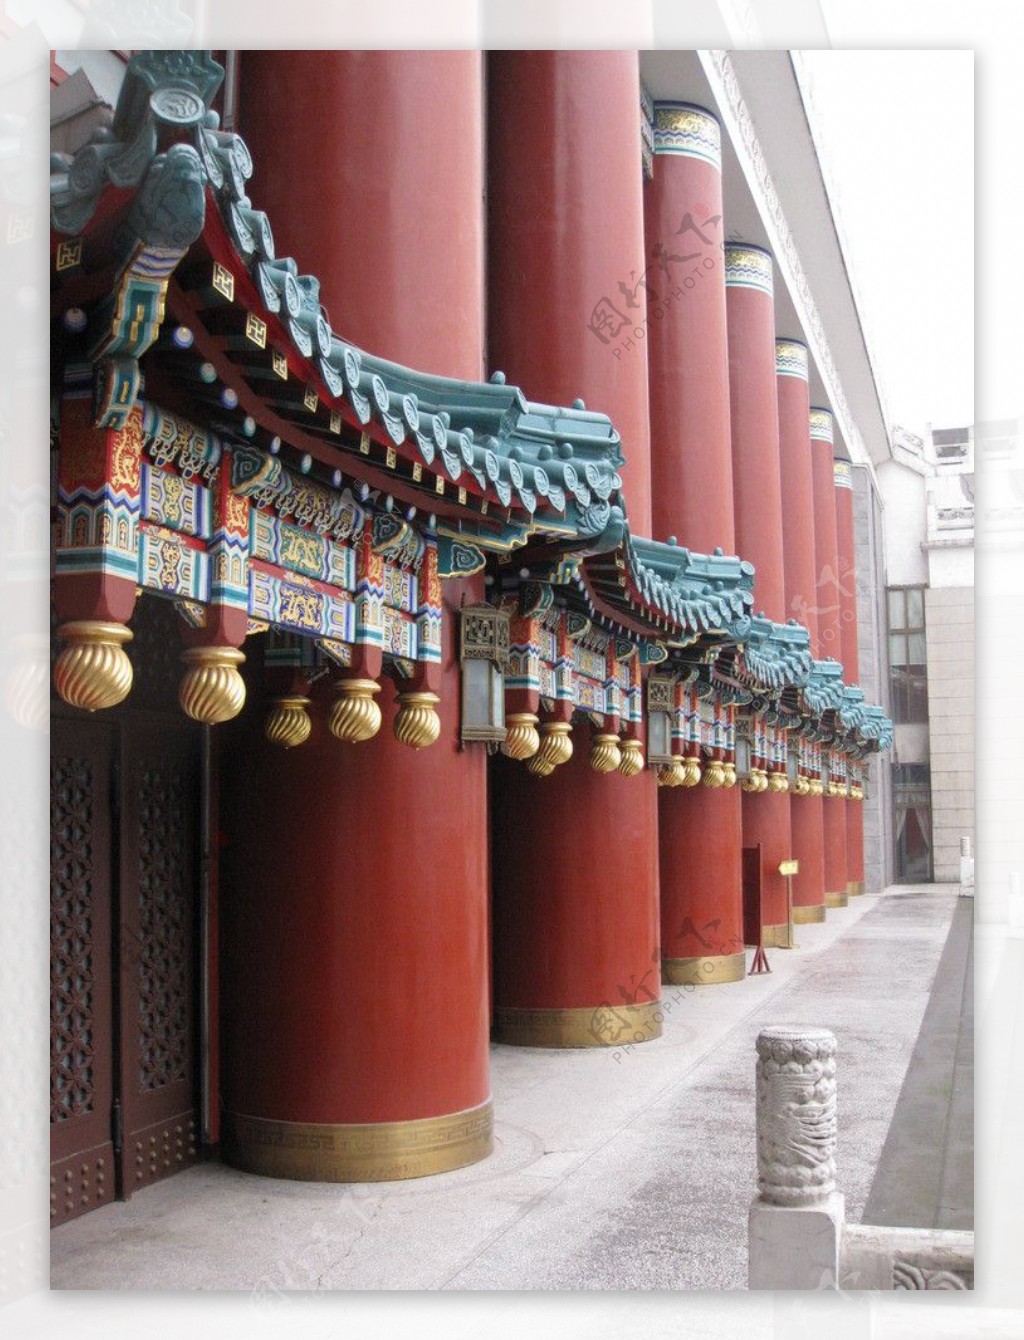 重庆市人民大礼堂图片